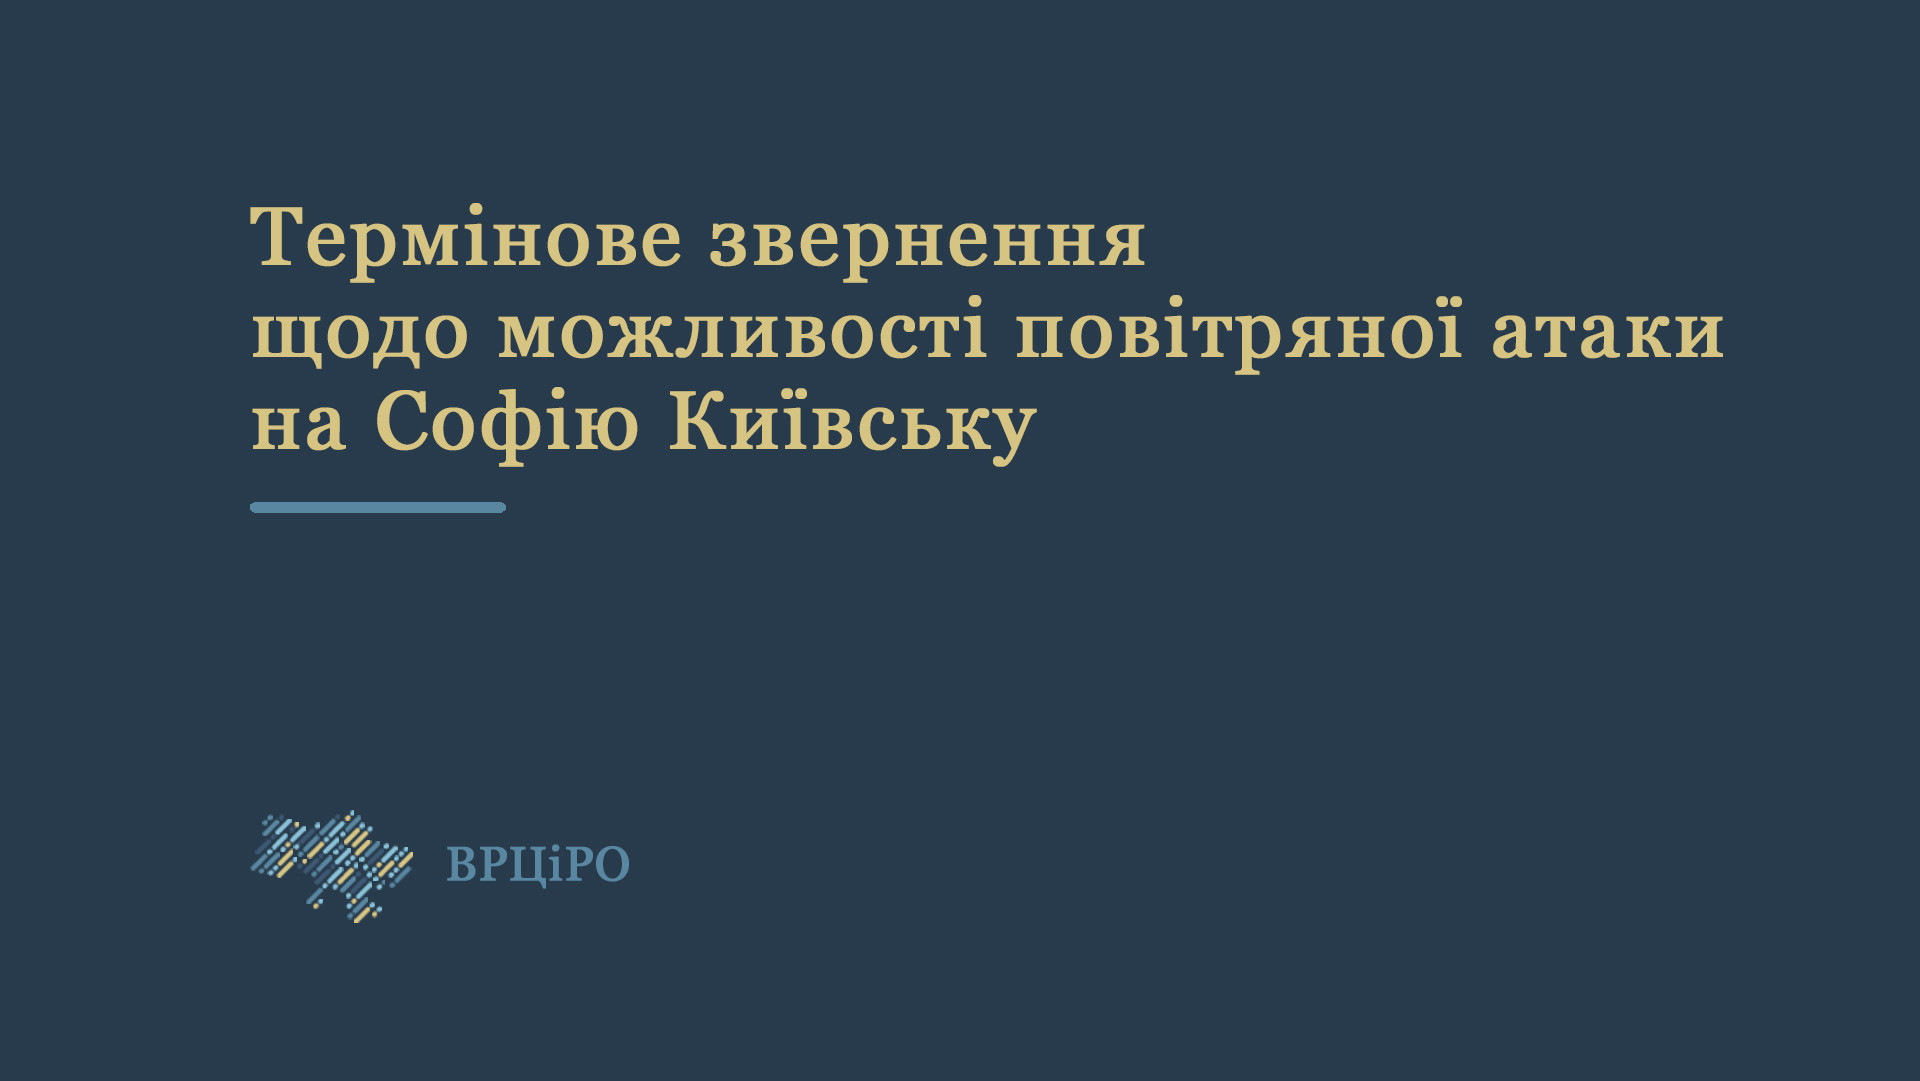 Термінове звернення ВРЦіРО щодо можливості повітряної атаки на Софію Київську